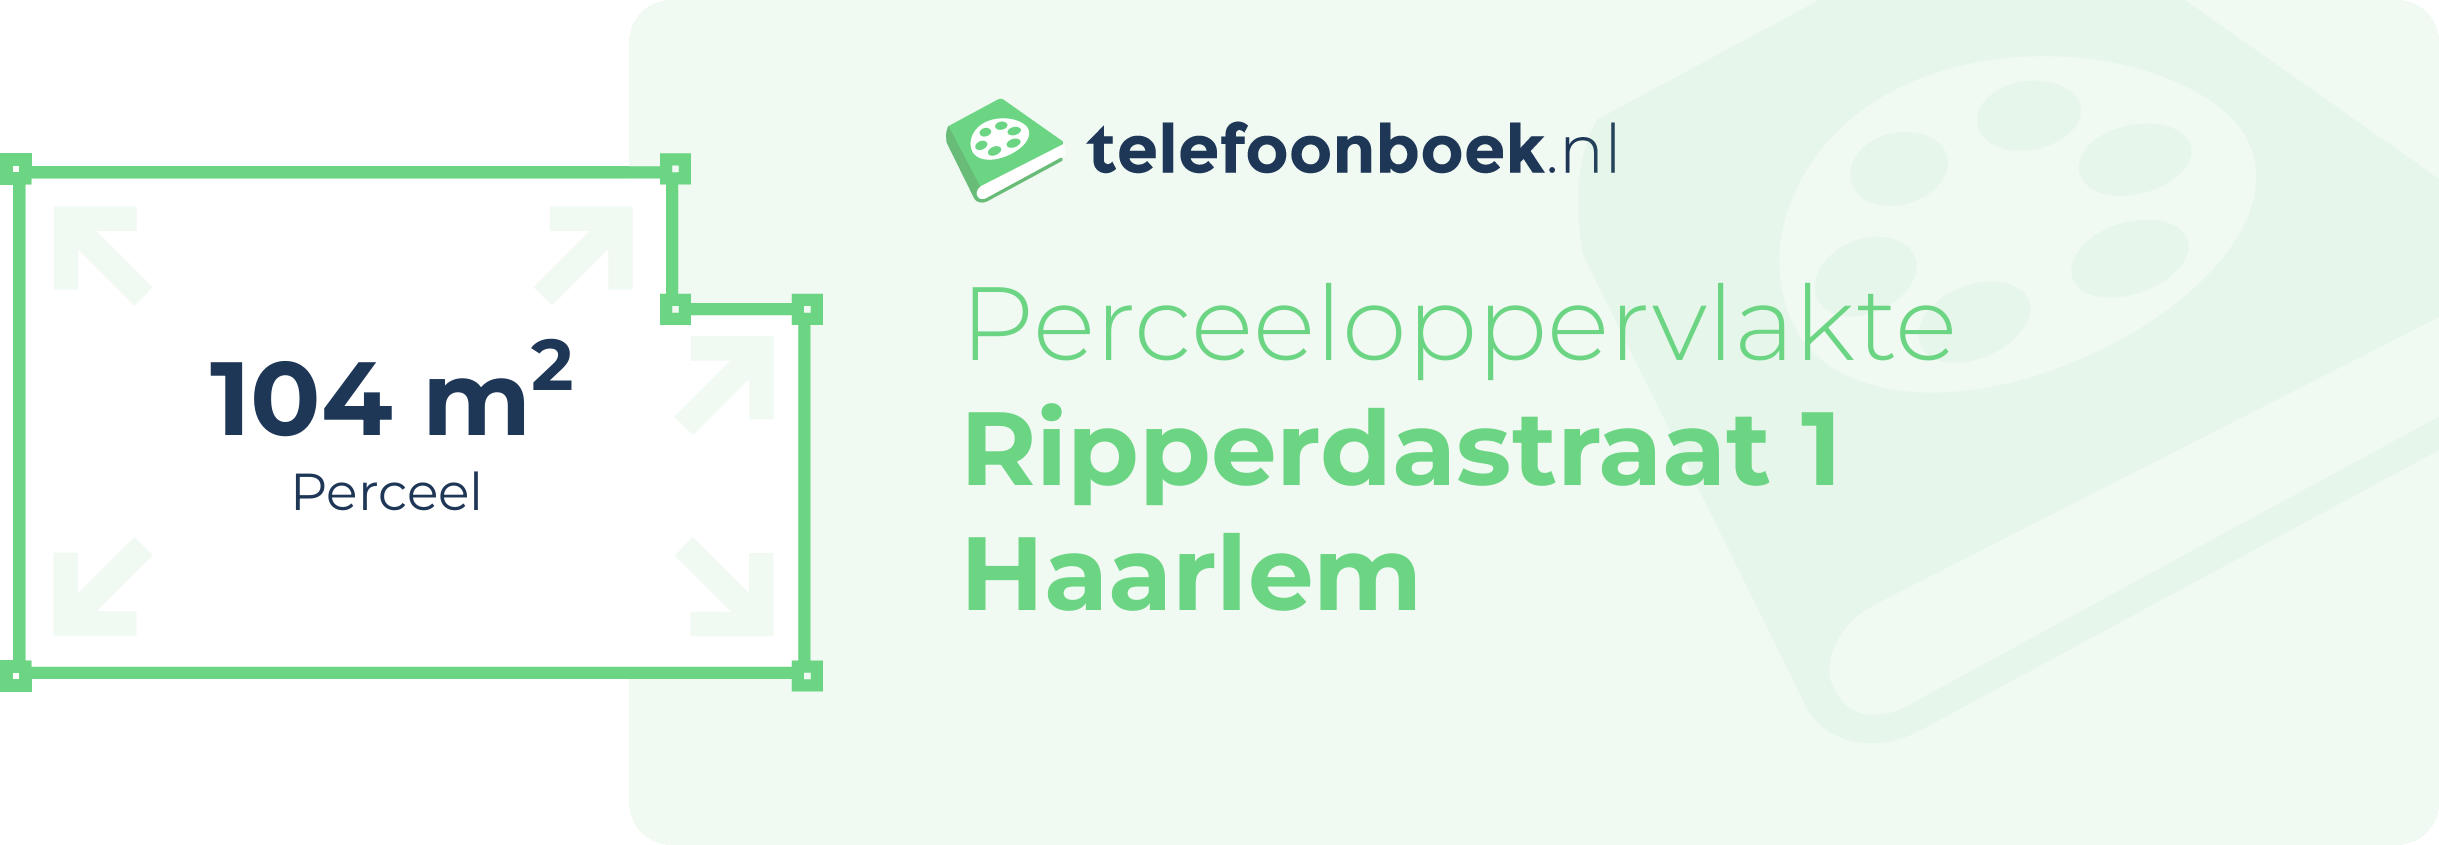 Perceeloppervlakte Ripperdastraat 1 Haarlem